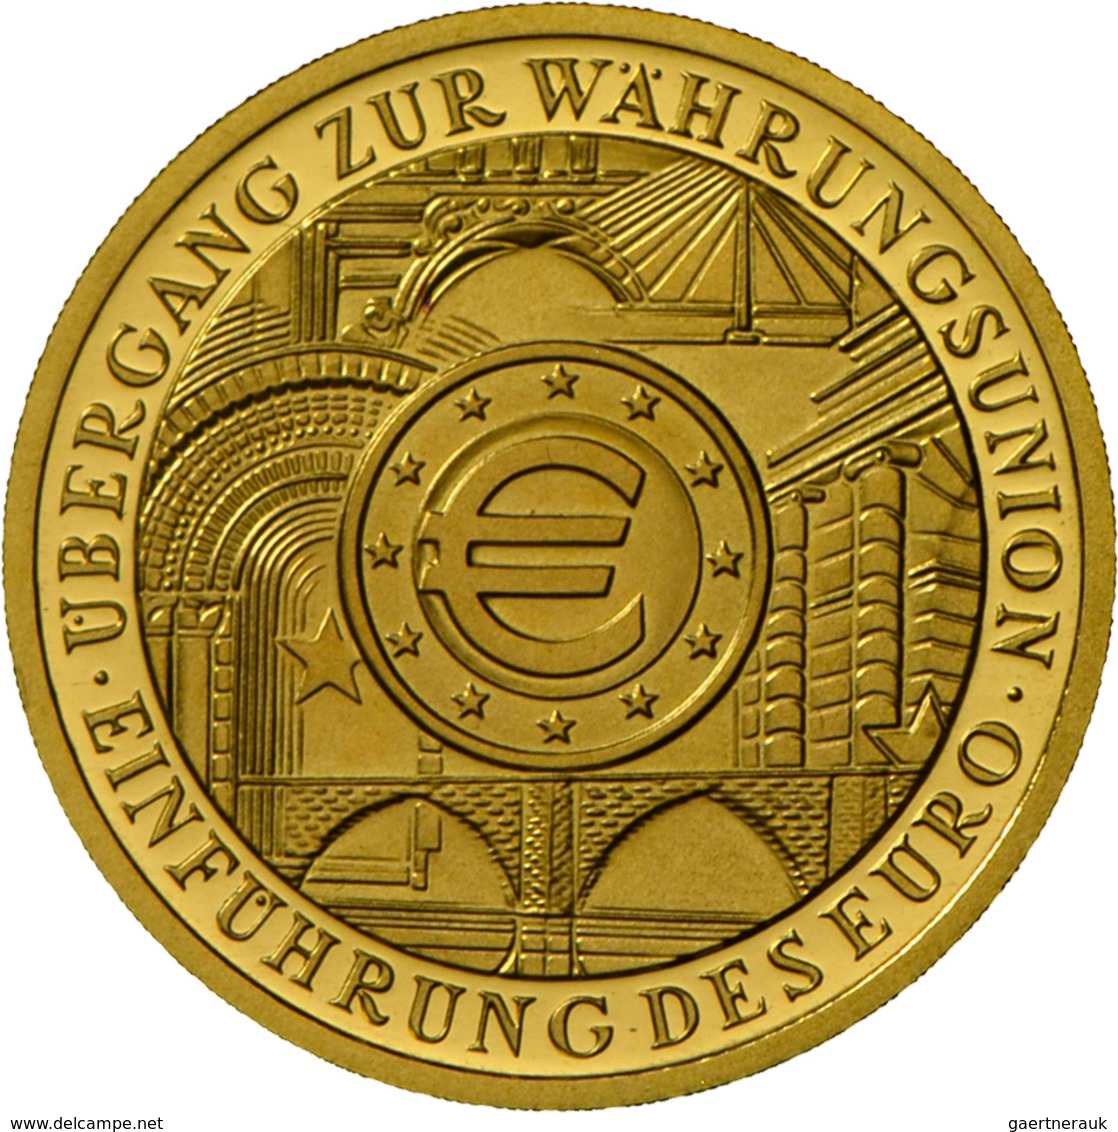 Deutschland - Anlagegold: 5 X 100 Euro 2002 Währungsunion (A,D,F,G,J), In Originalkapsel, Mit Zertif - Germany